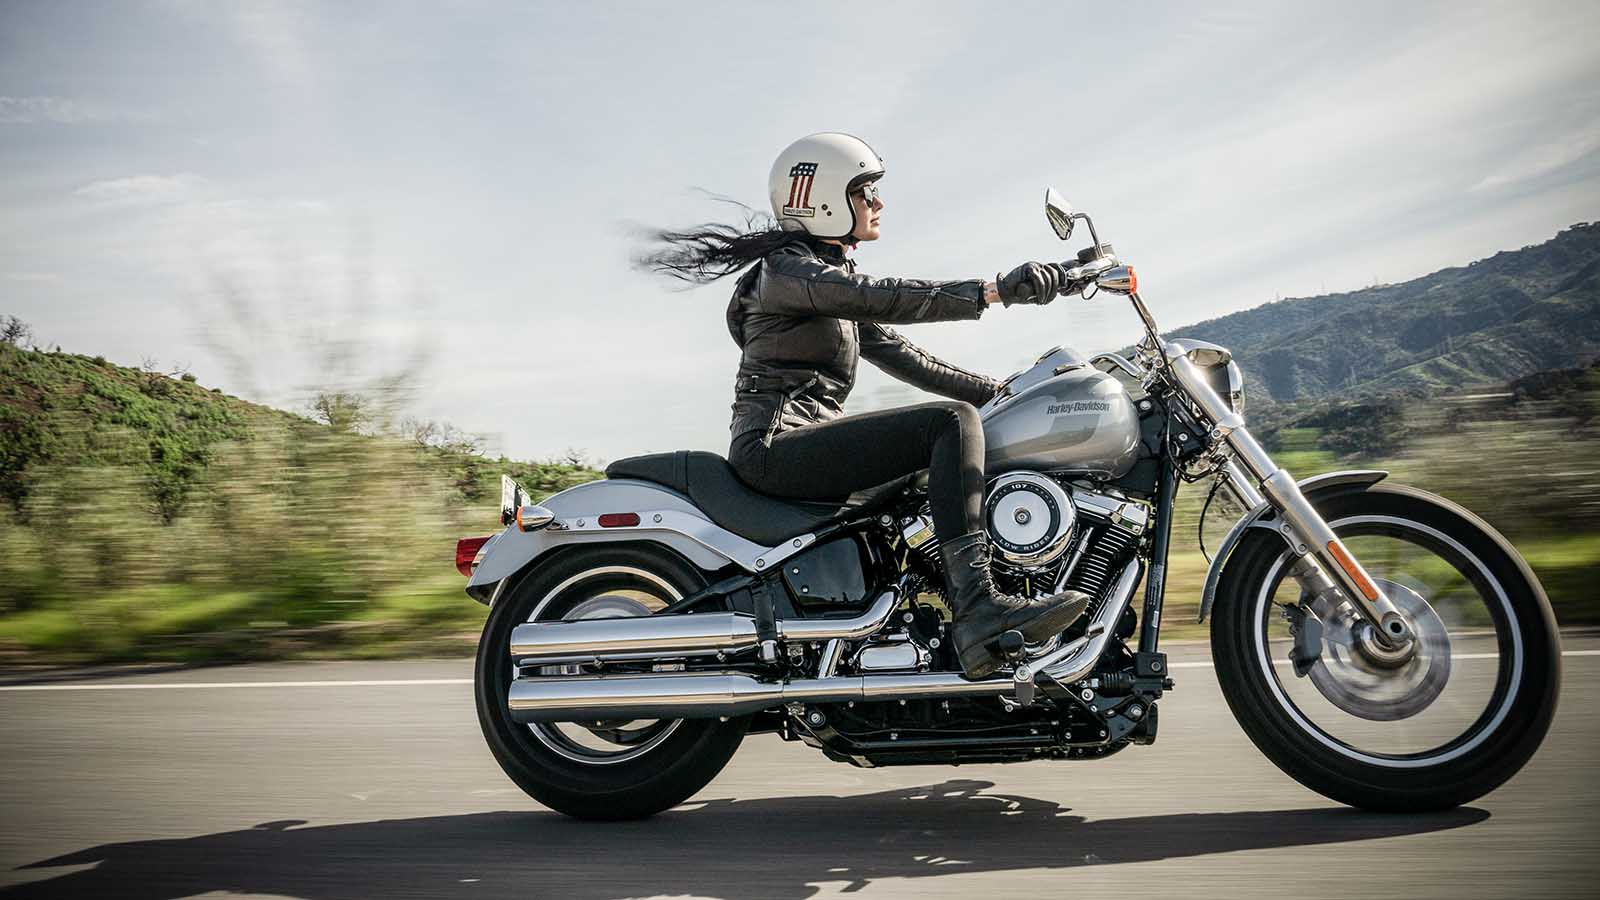 köpa mc mc-lån kvinna på Harley - Lendobloggen